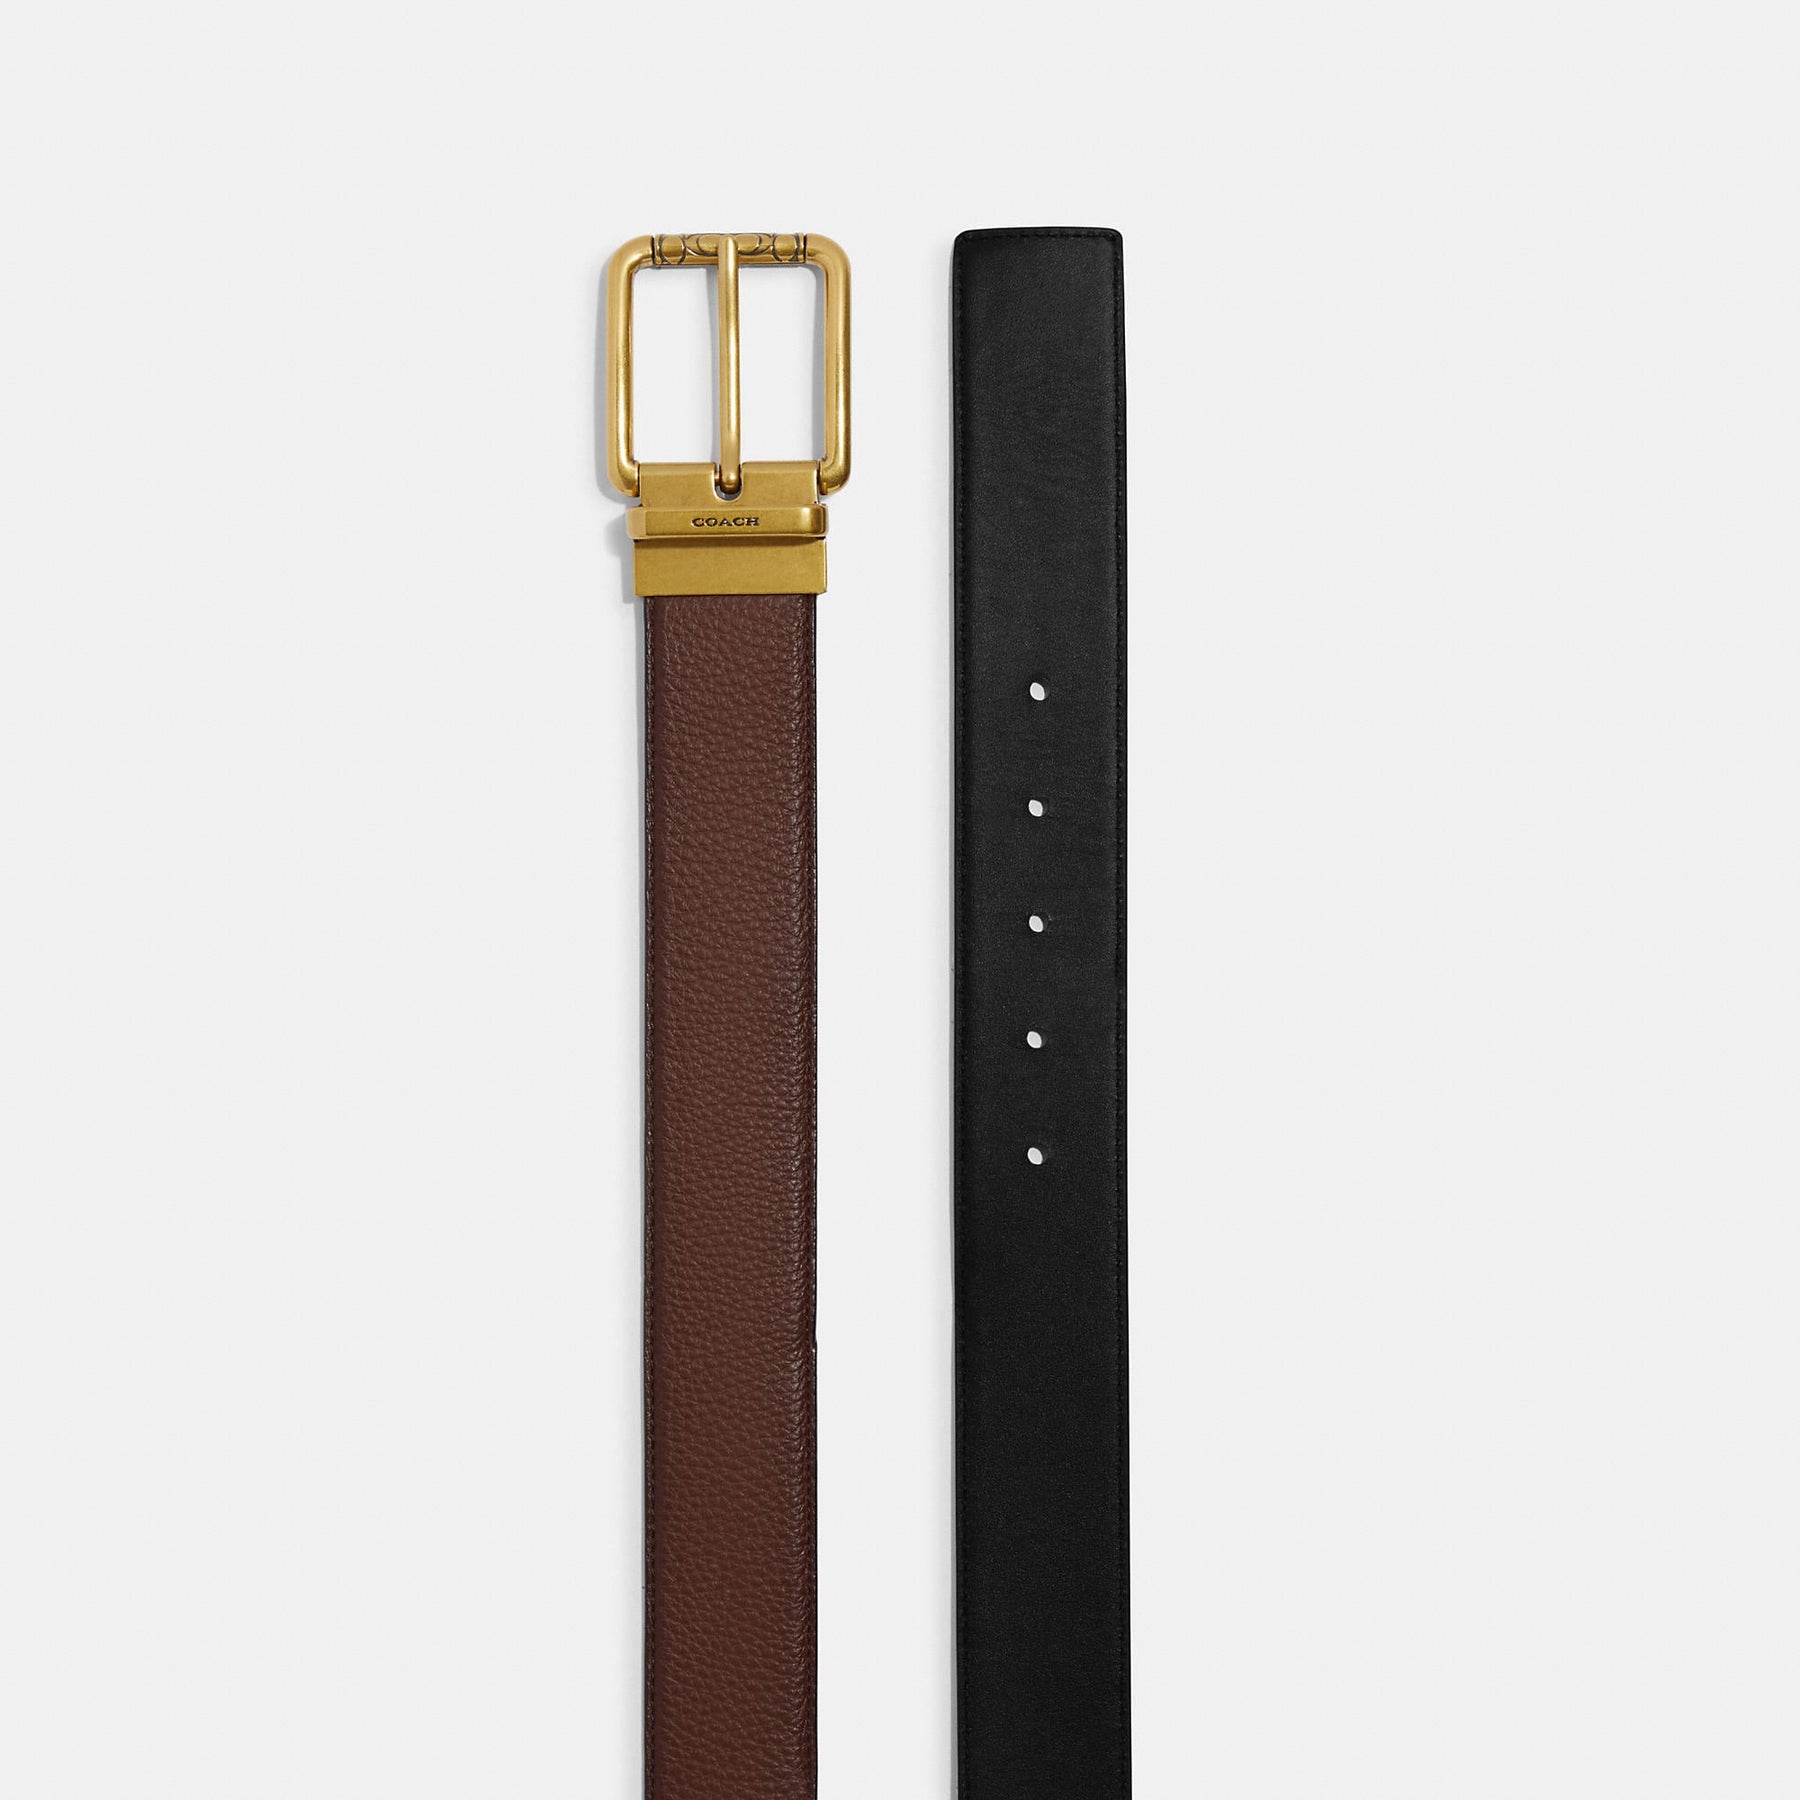 35mm Solid Brass Roller Harness Belt Buckle by Trafalgar Men's Accessories